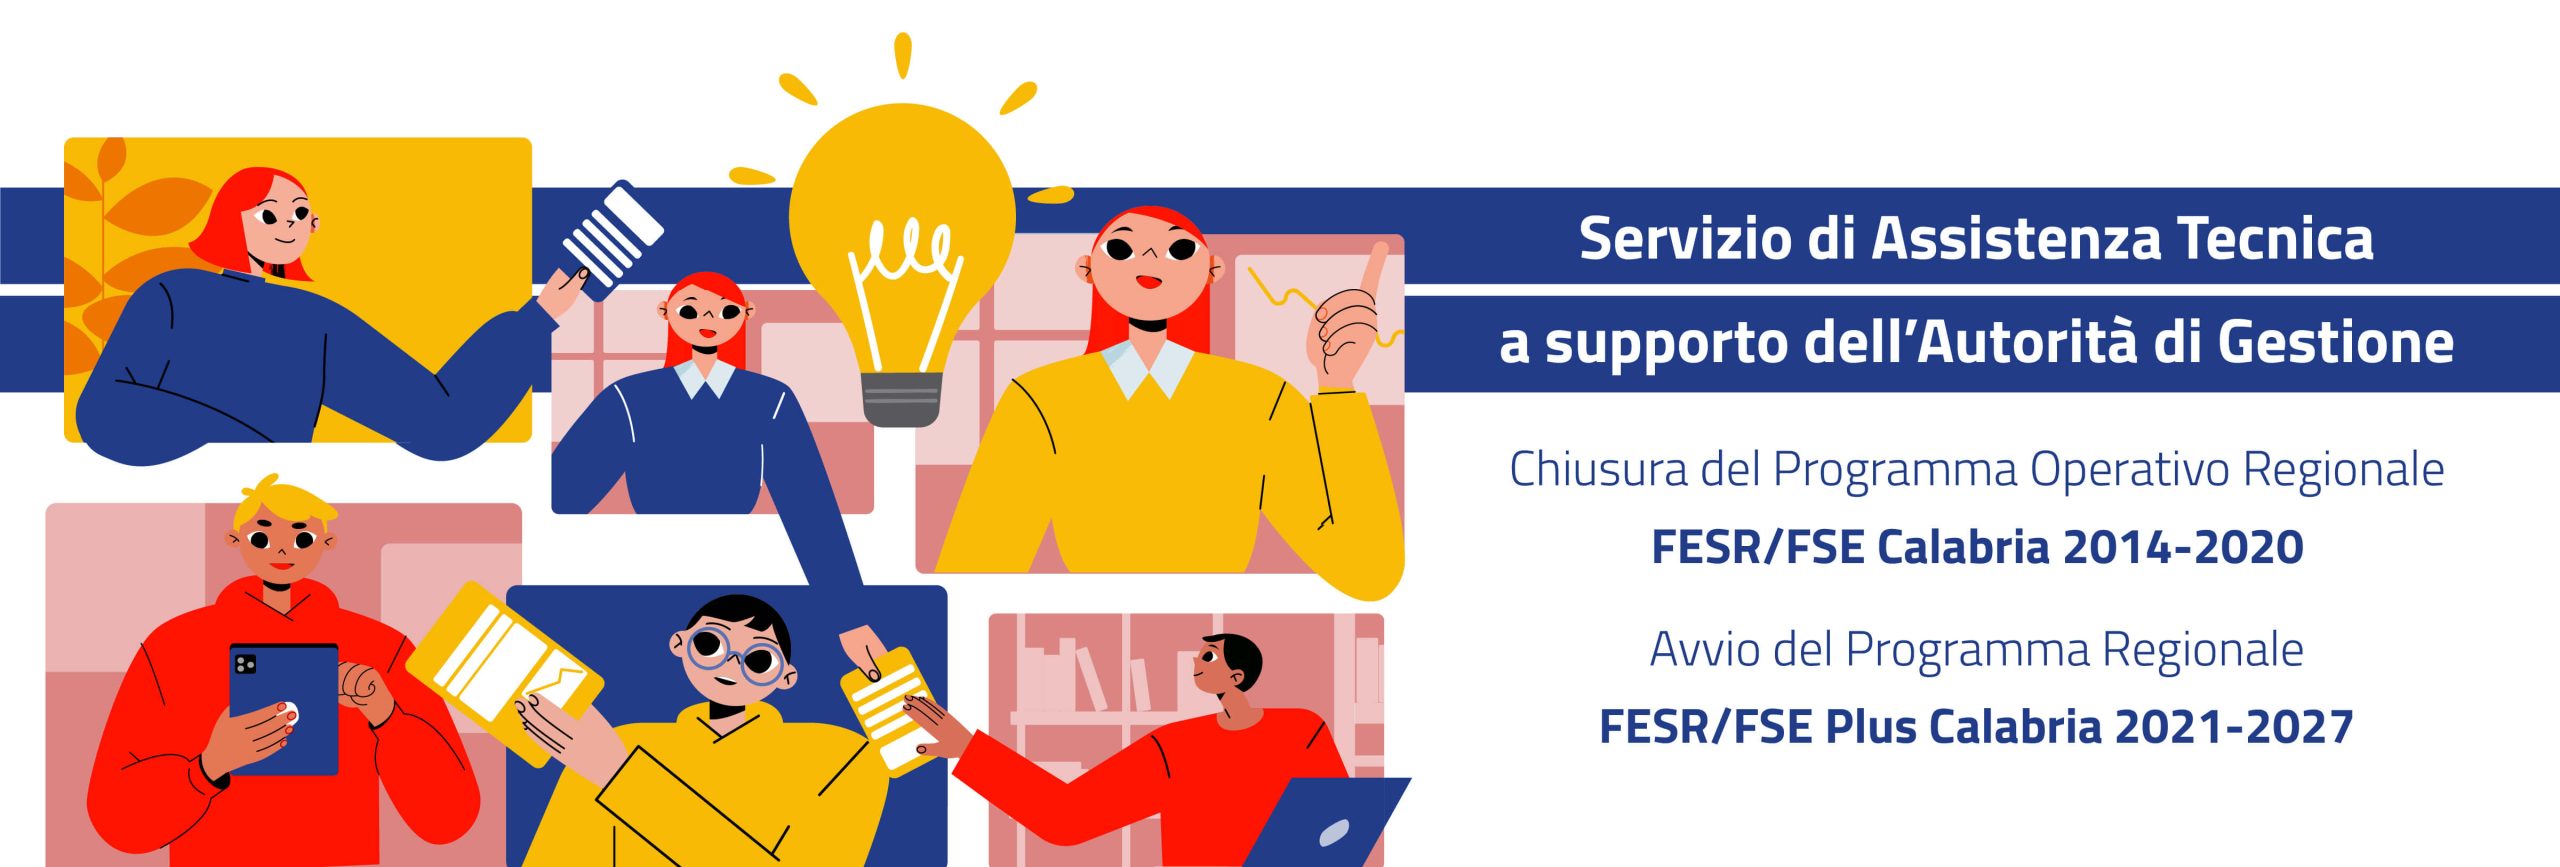 Gara per l'affidamento del "Servizio di Assistenza Tecnica a supporto dell’Autorità di Gestione per le attività di chiusura del Programma Operativo Regionale FESR/FSE Calabria 2014/2020 e per la definizione e l’avvio del Programma Regionale FESR/FSE Plus Calabria 2021/2027"